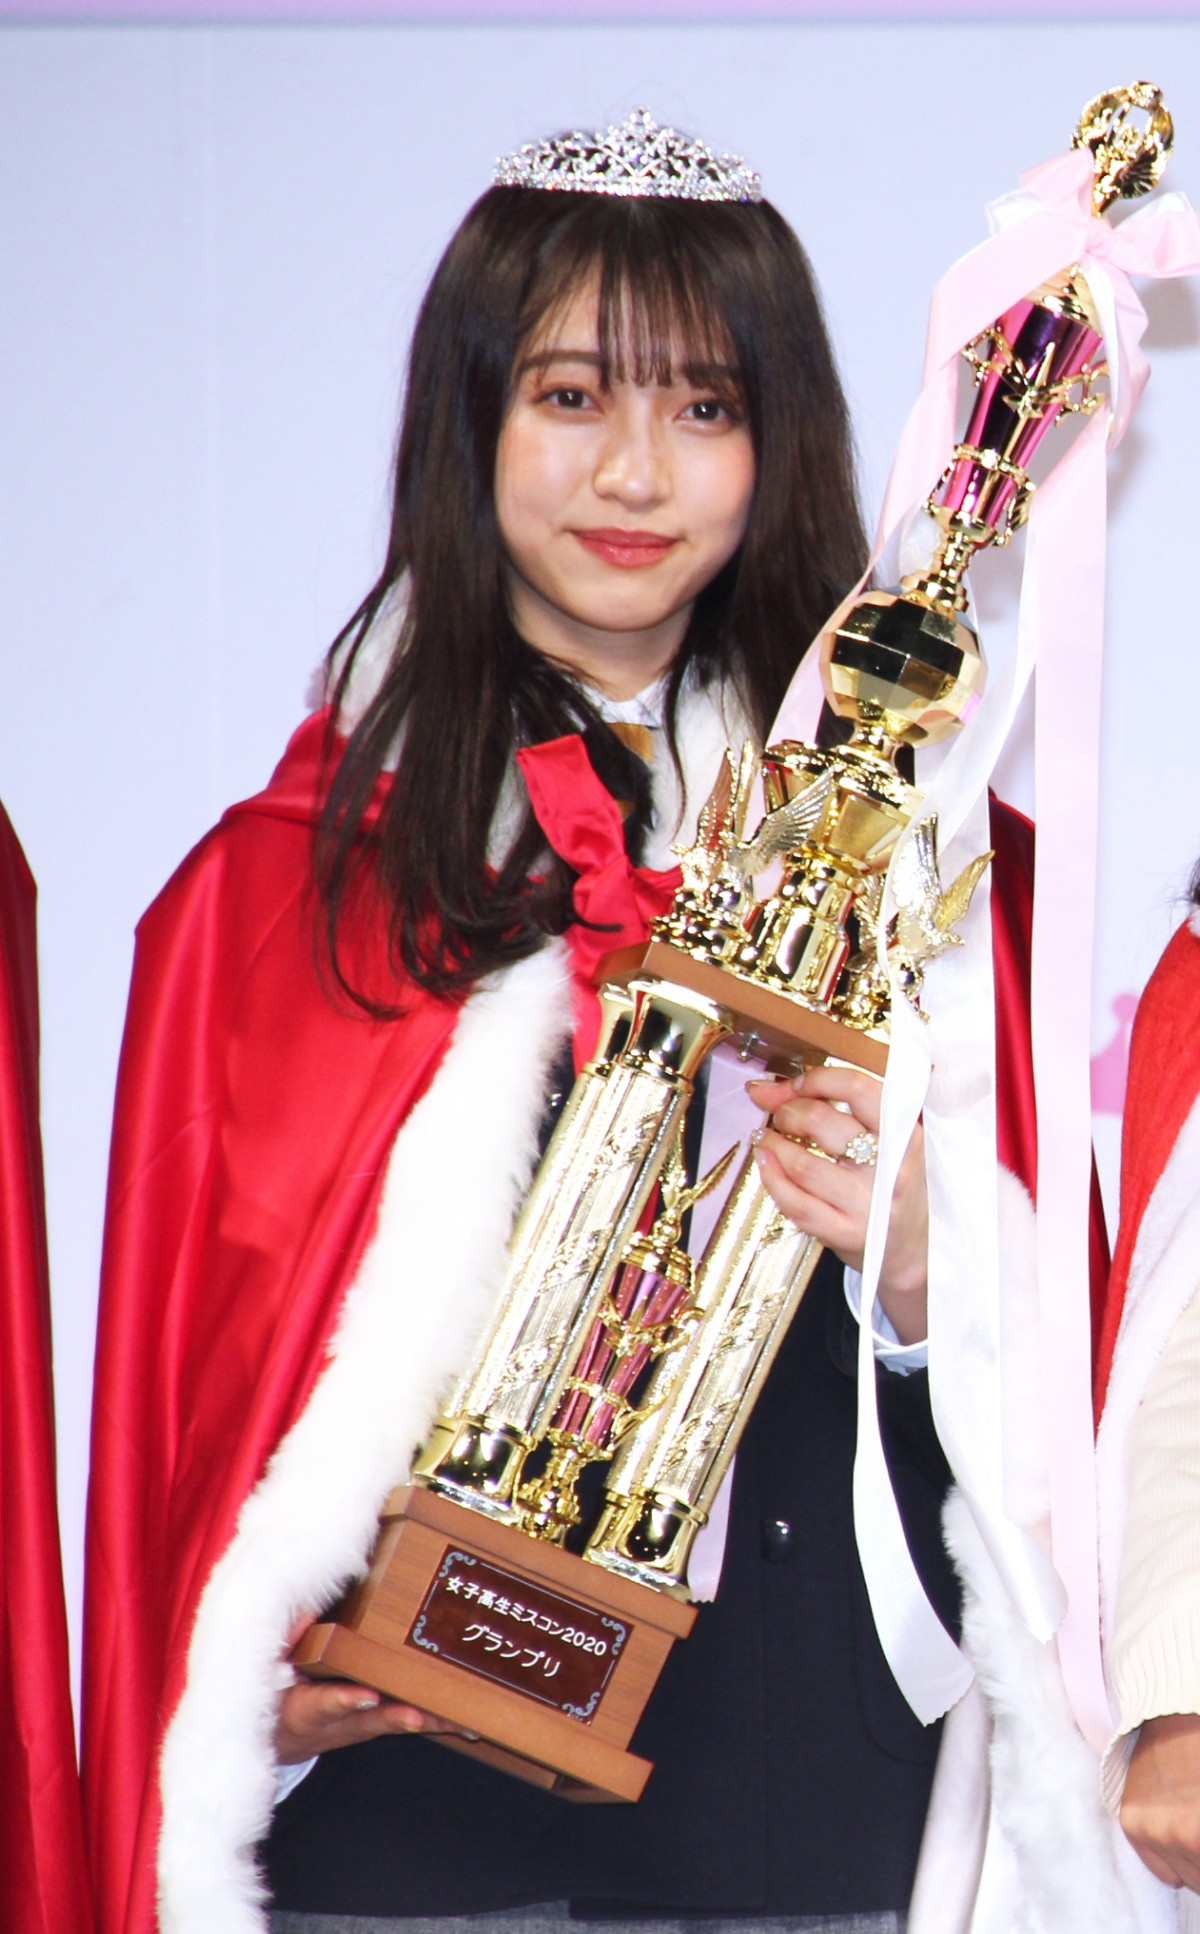 日本一かわいいjk 東京の高校3年生 元アイドルで夢は 世界のアイコン Oricon News